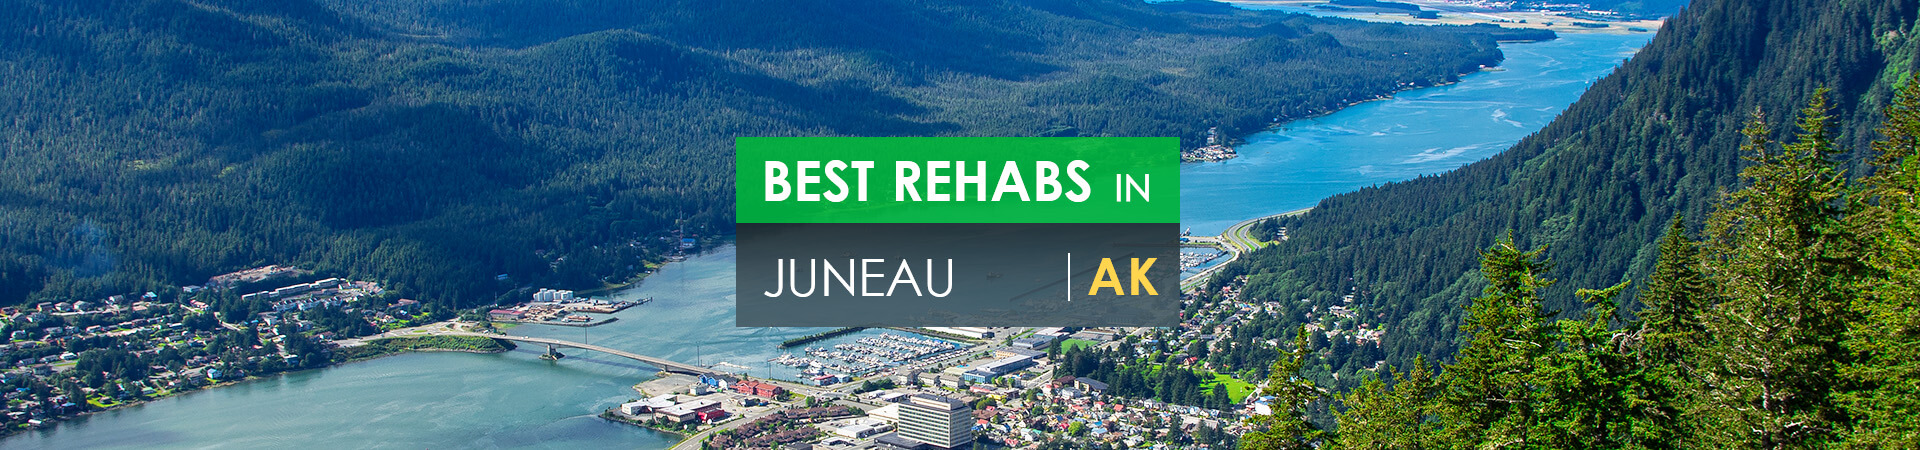 Best rehabs in Juneau, AK